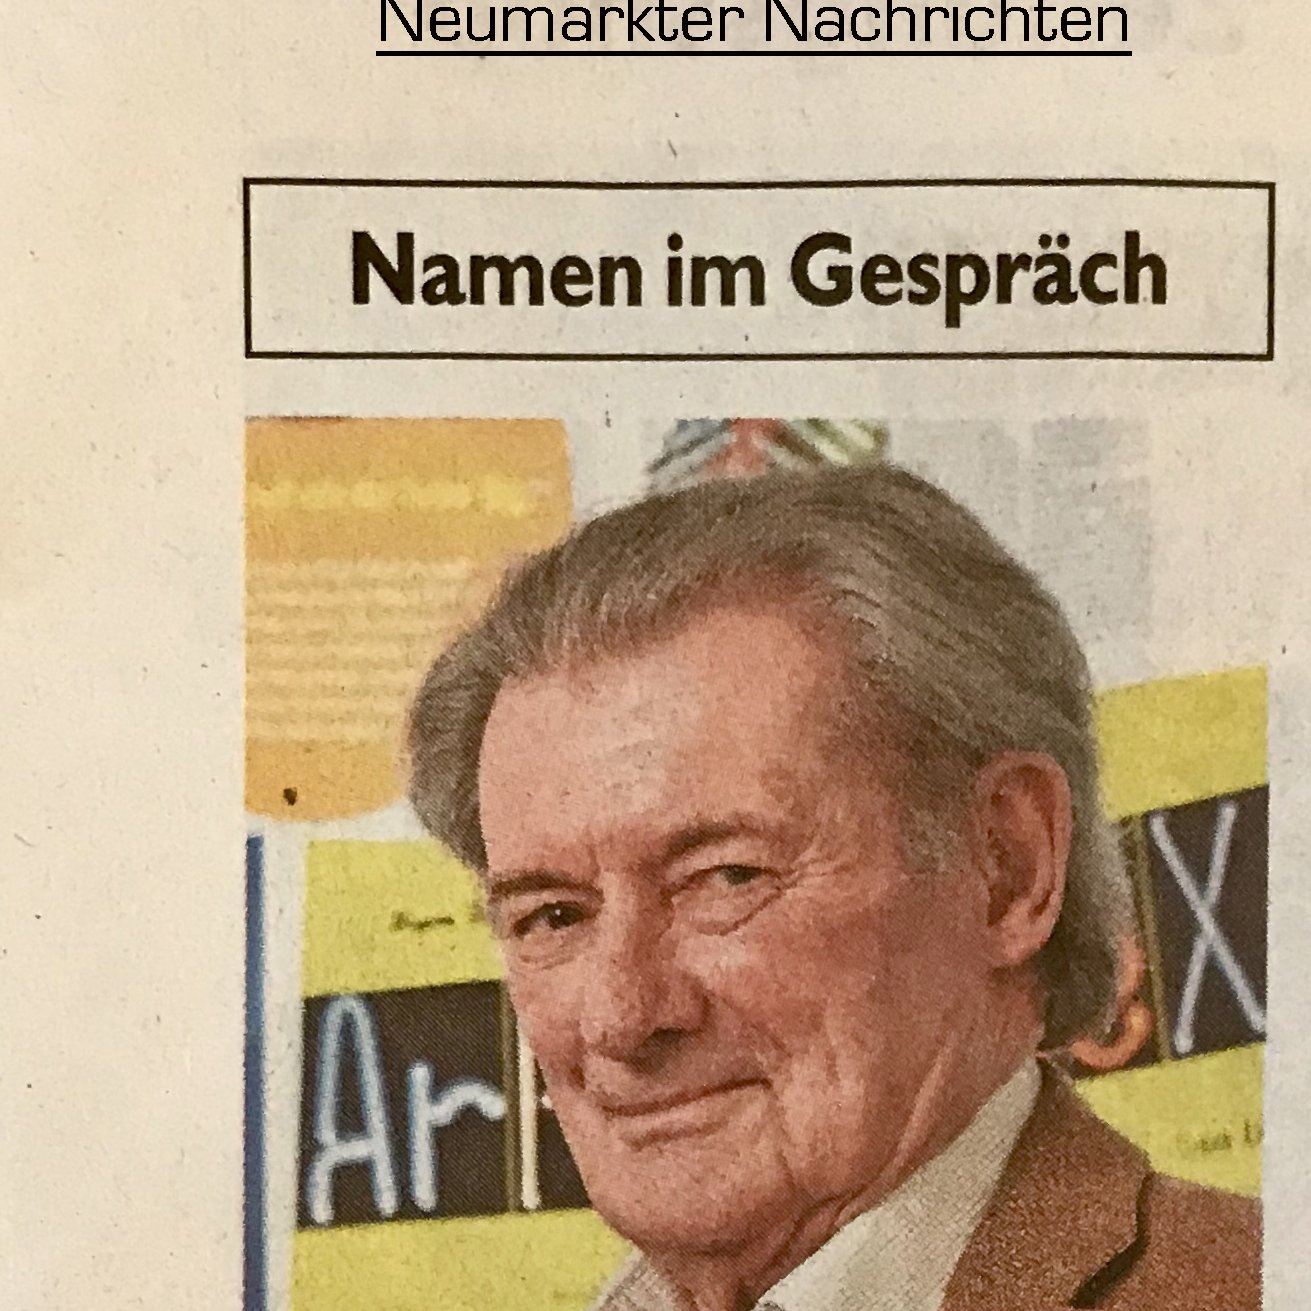 Grief about Dieter Fischer